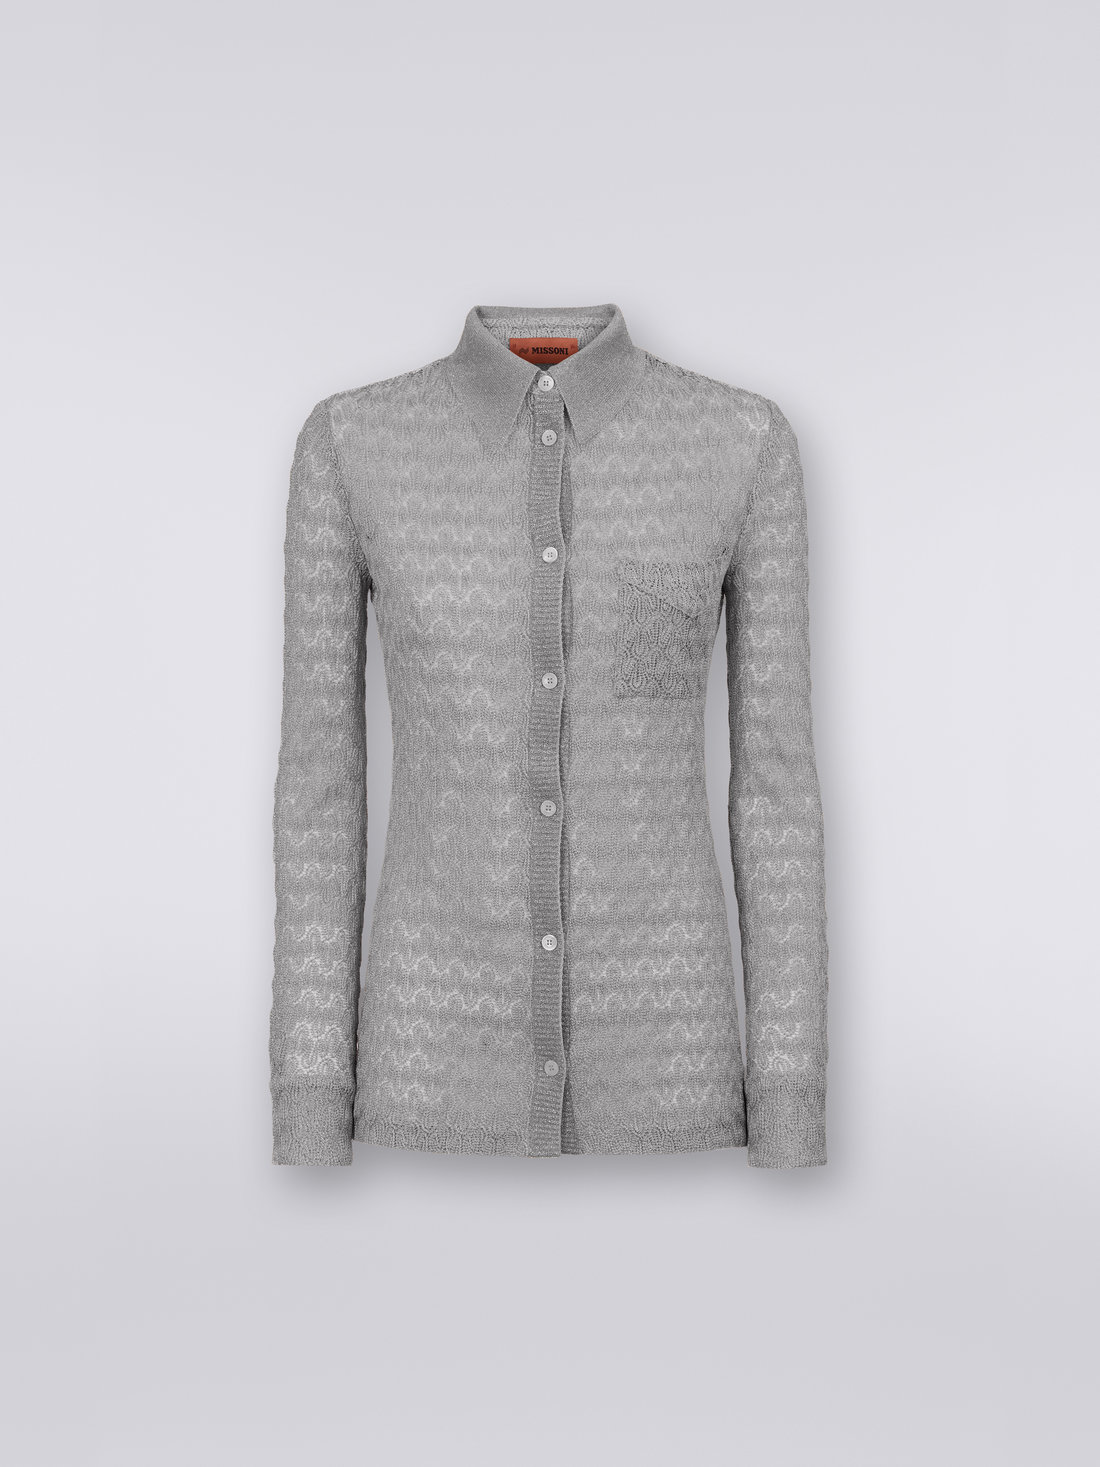 Viscose blend lace effect shirt with lamé, Silver & Grey Lamé - DS23SJ02BR00JVS91D8 - 0